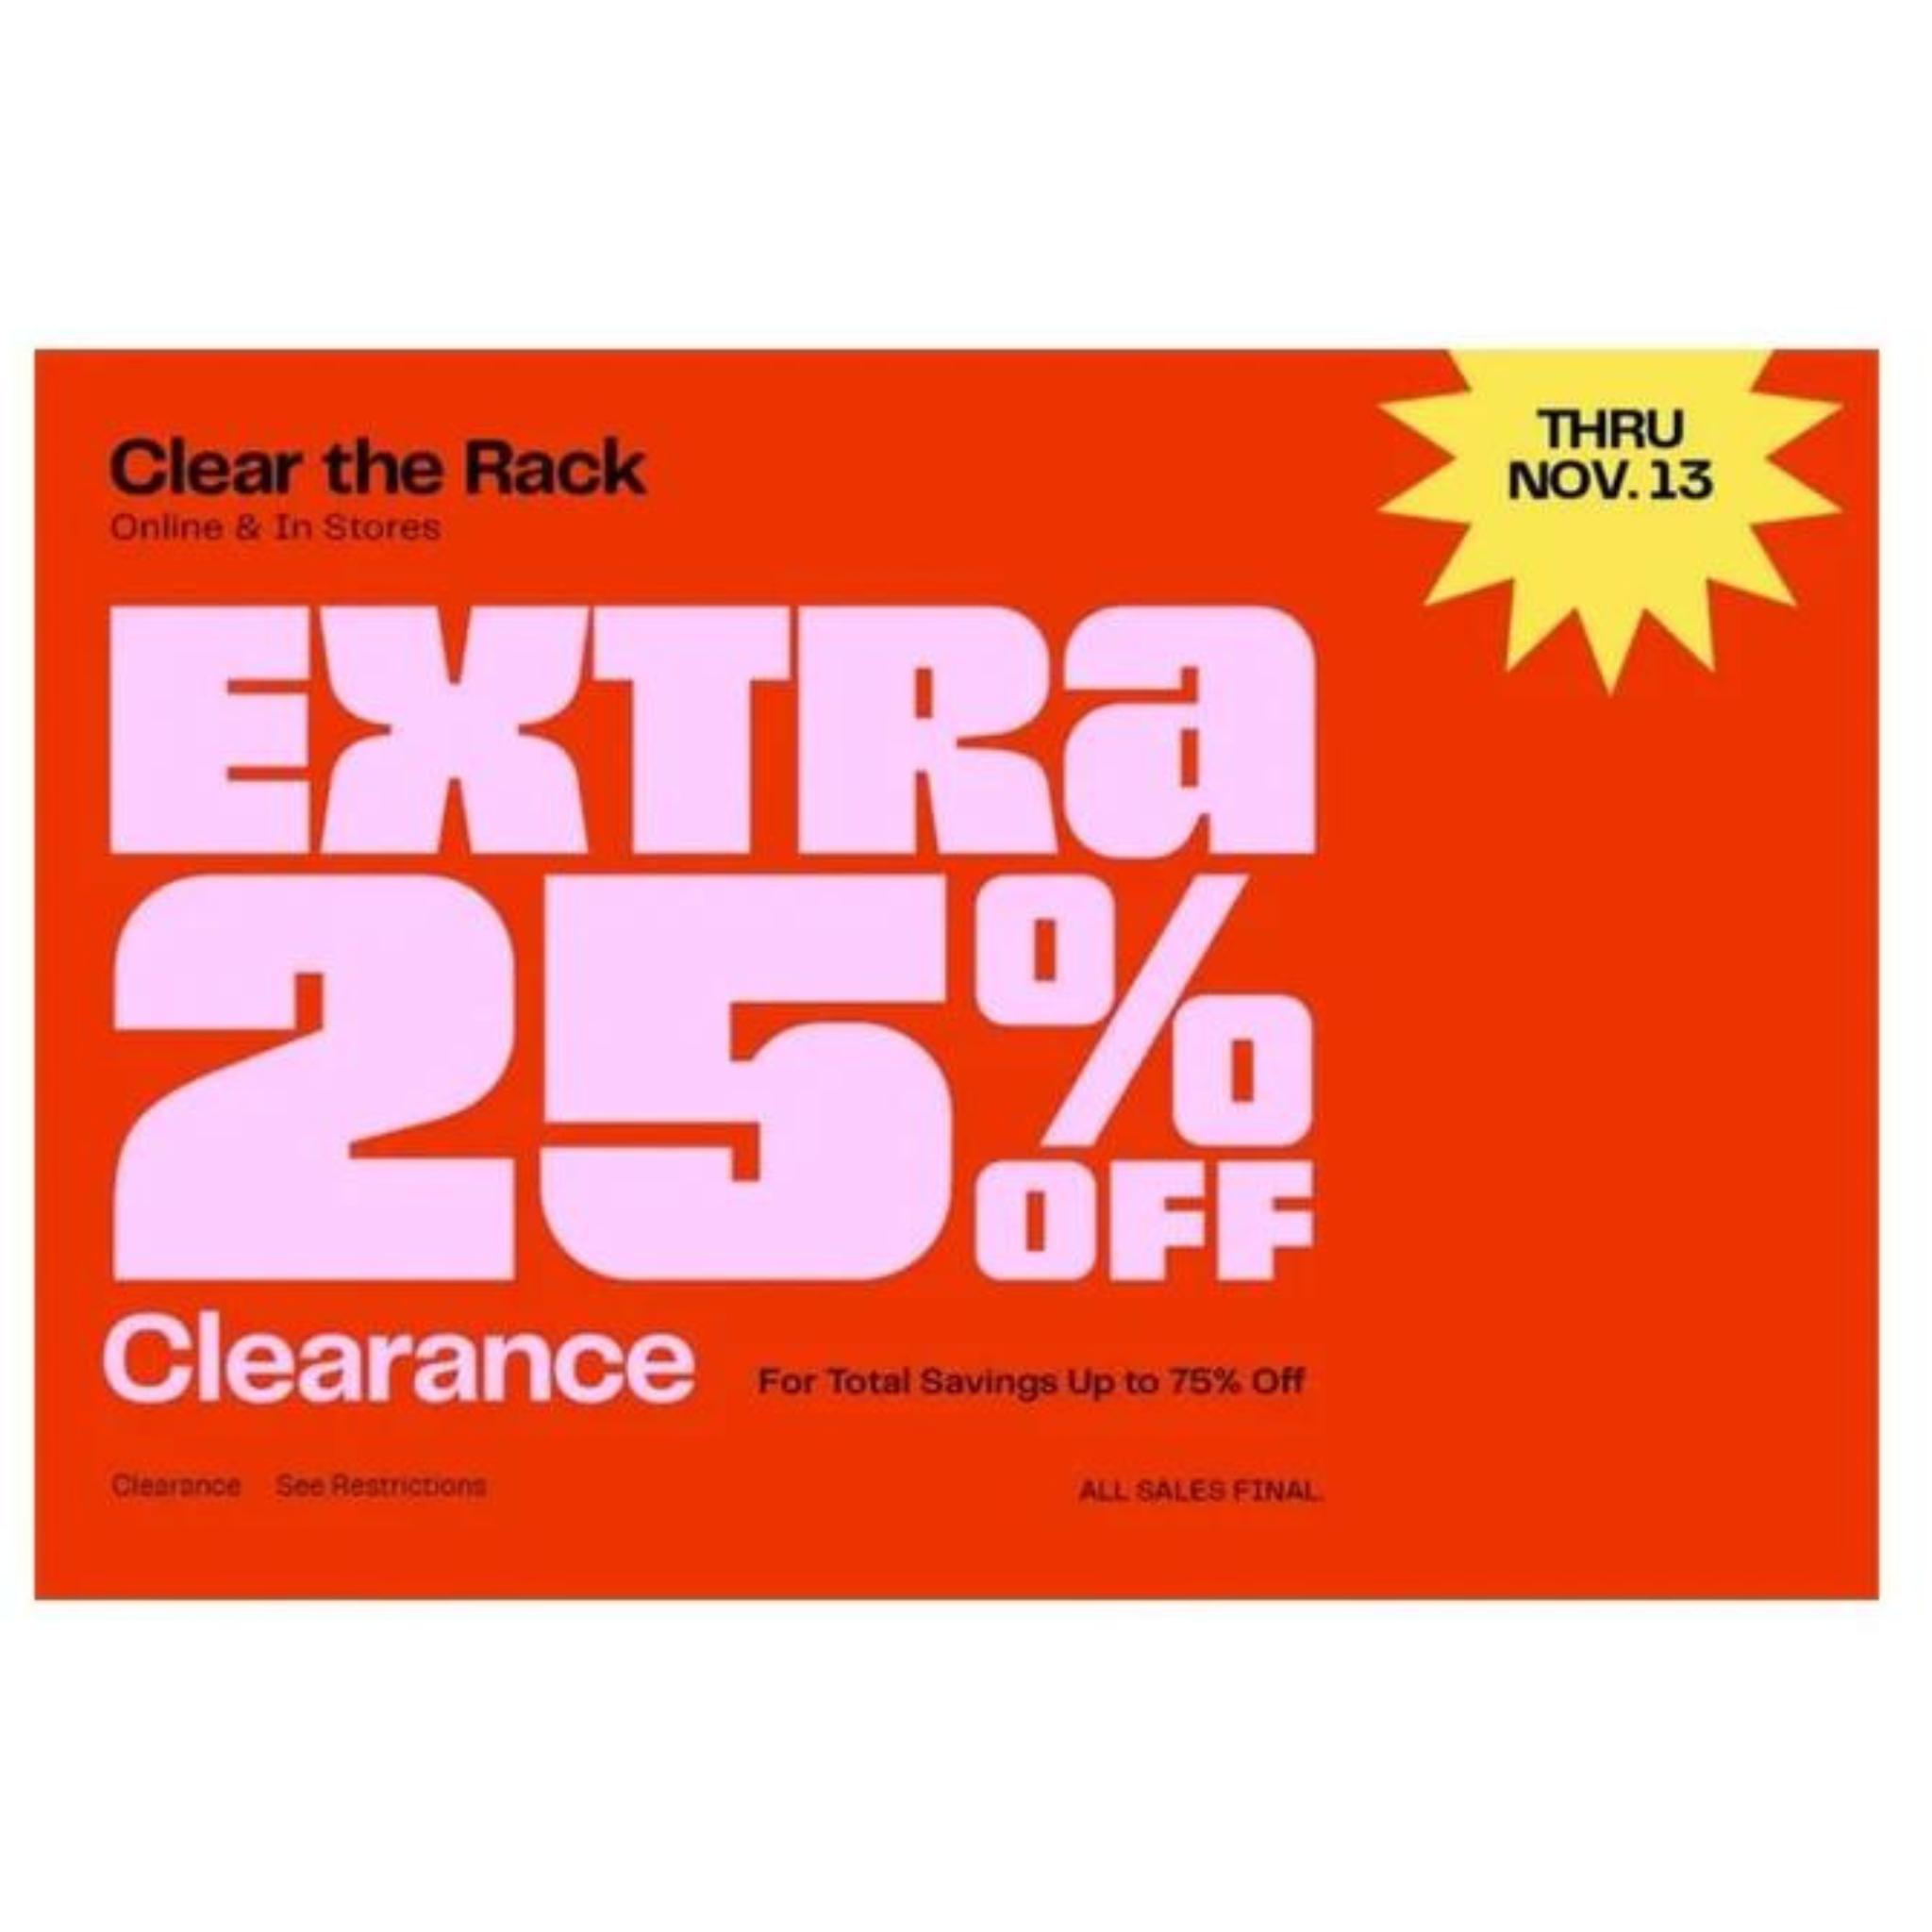 ¡Hasta un 75% de descuento! 25% de descuento adicional en liquidación de NordstromRack Clear The Rack Sale